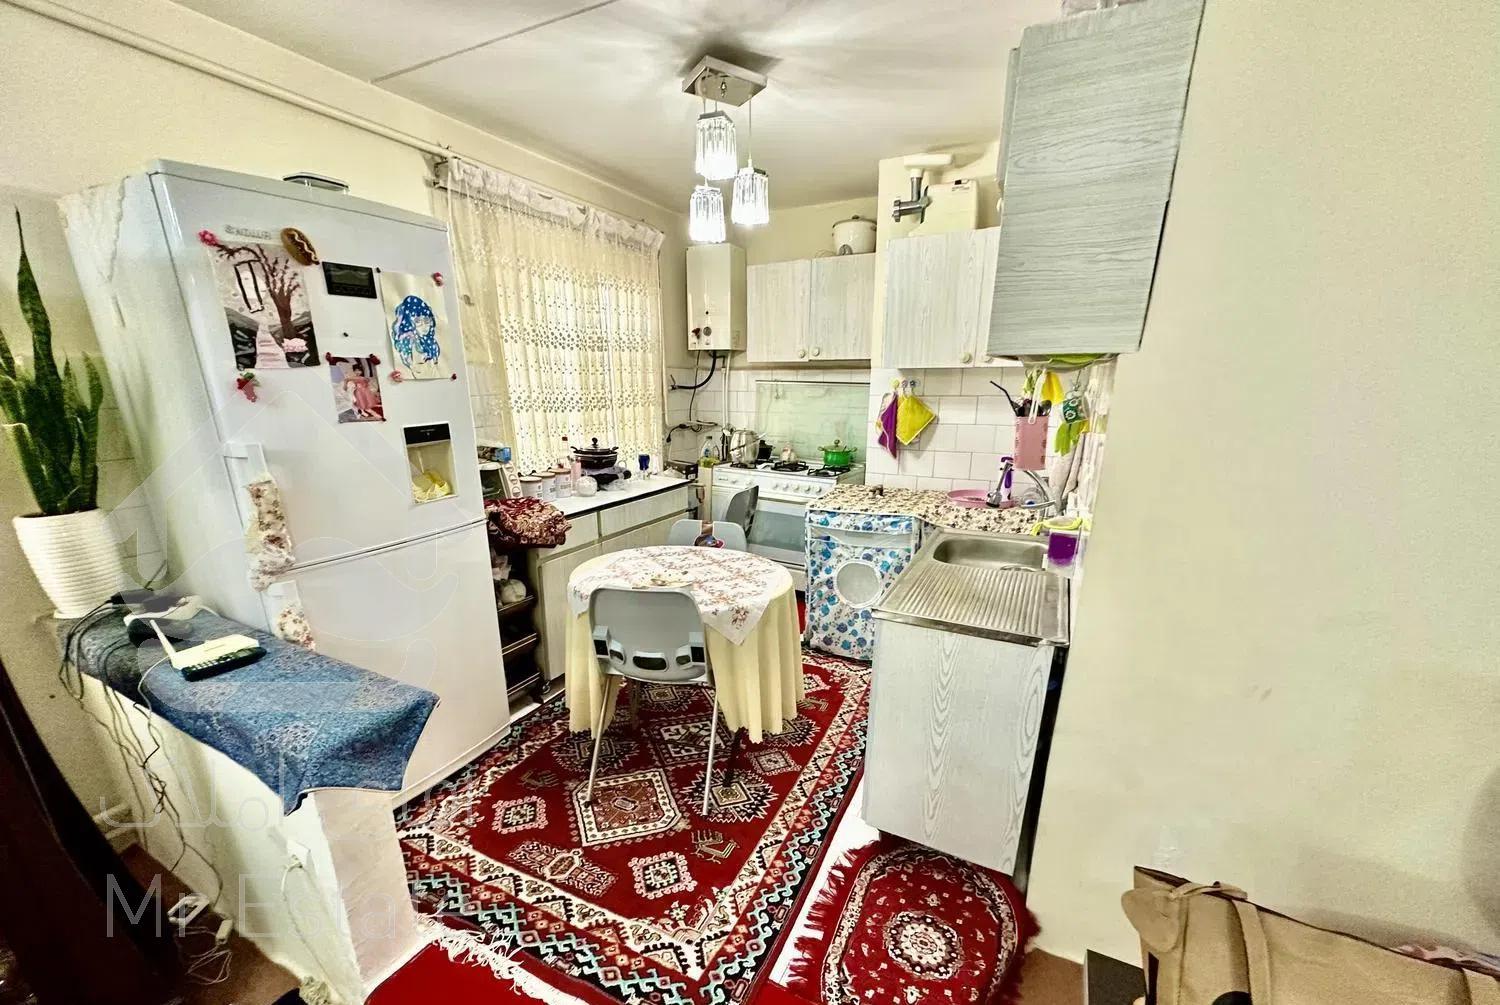 آپارتمان در باغمیشه مجتمع شهریار b اعیان ملک ۷۶متر